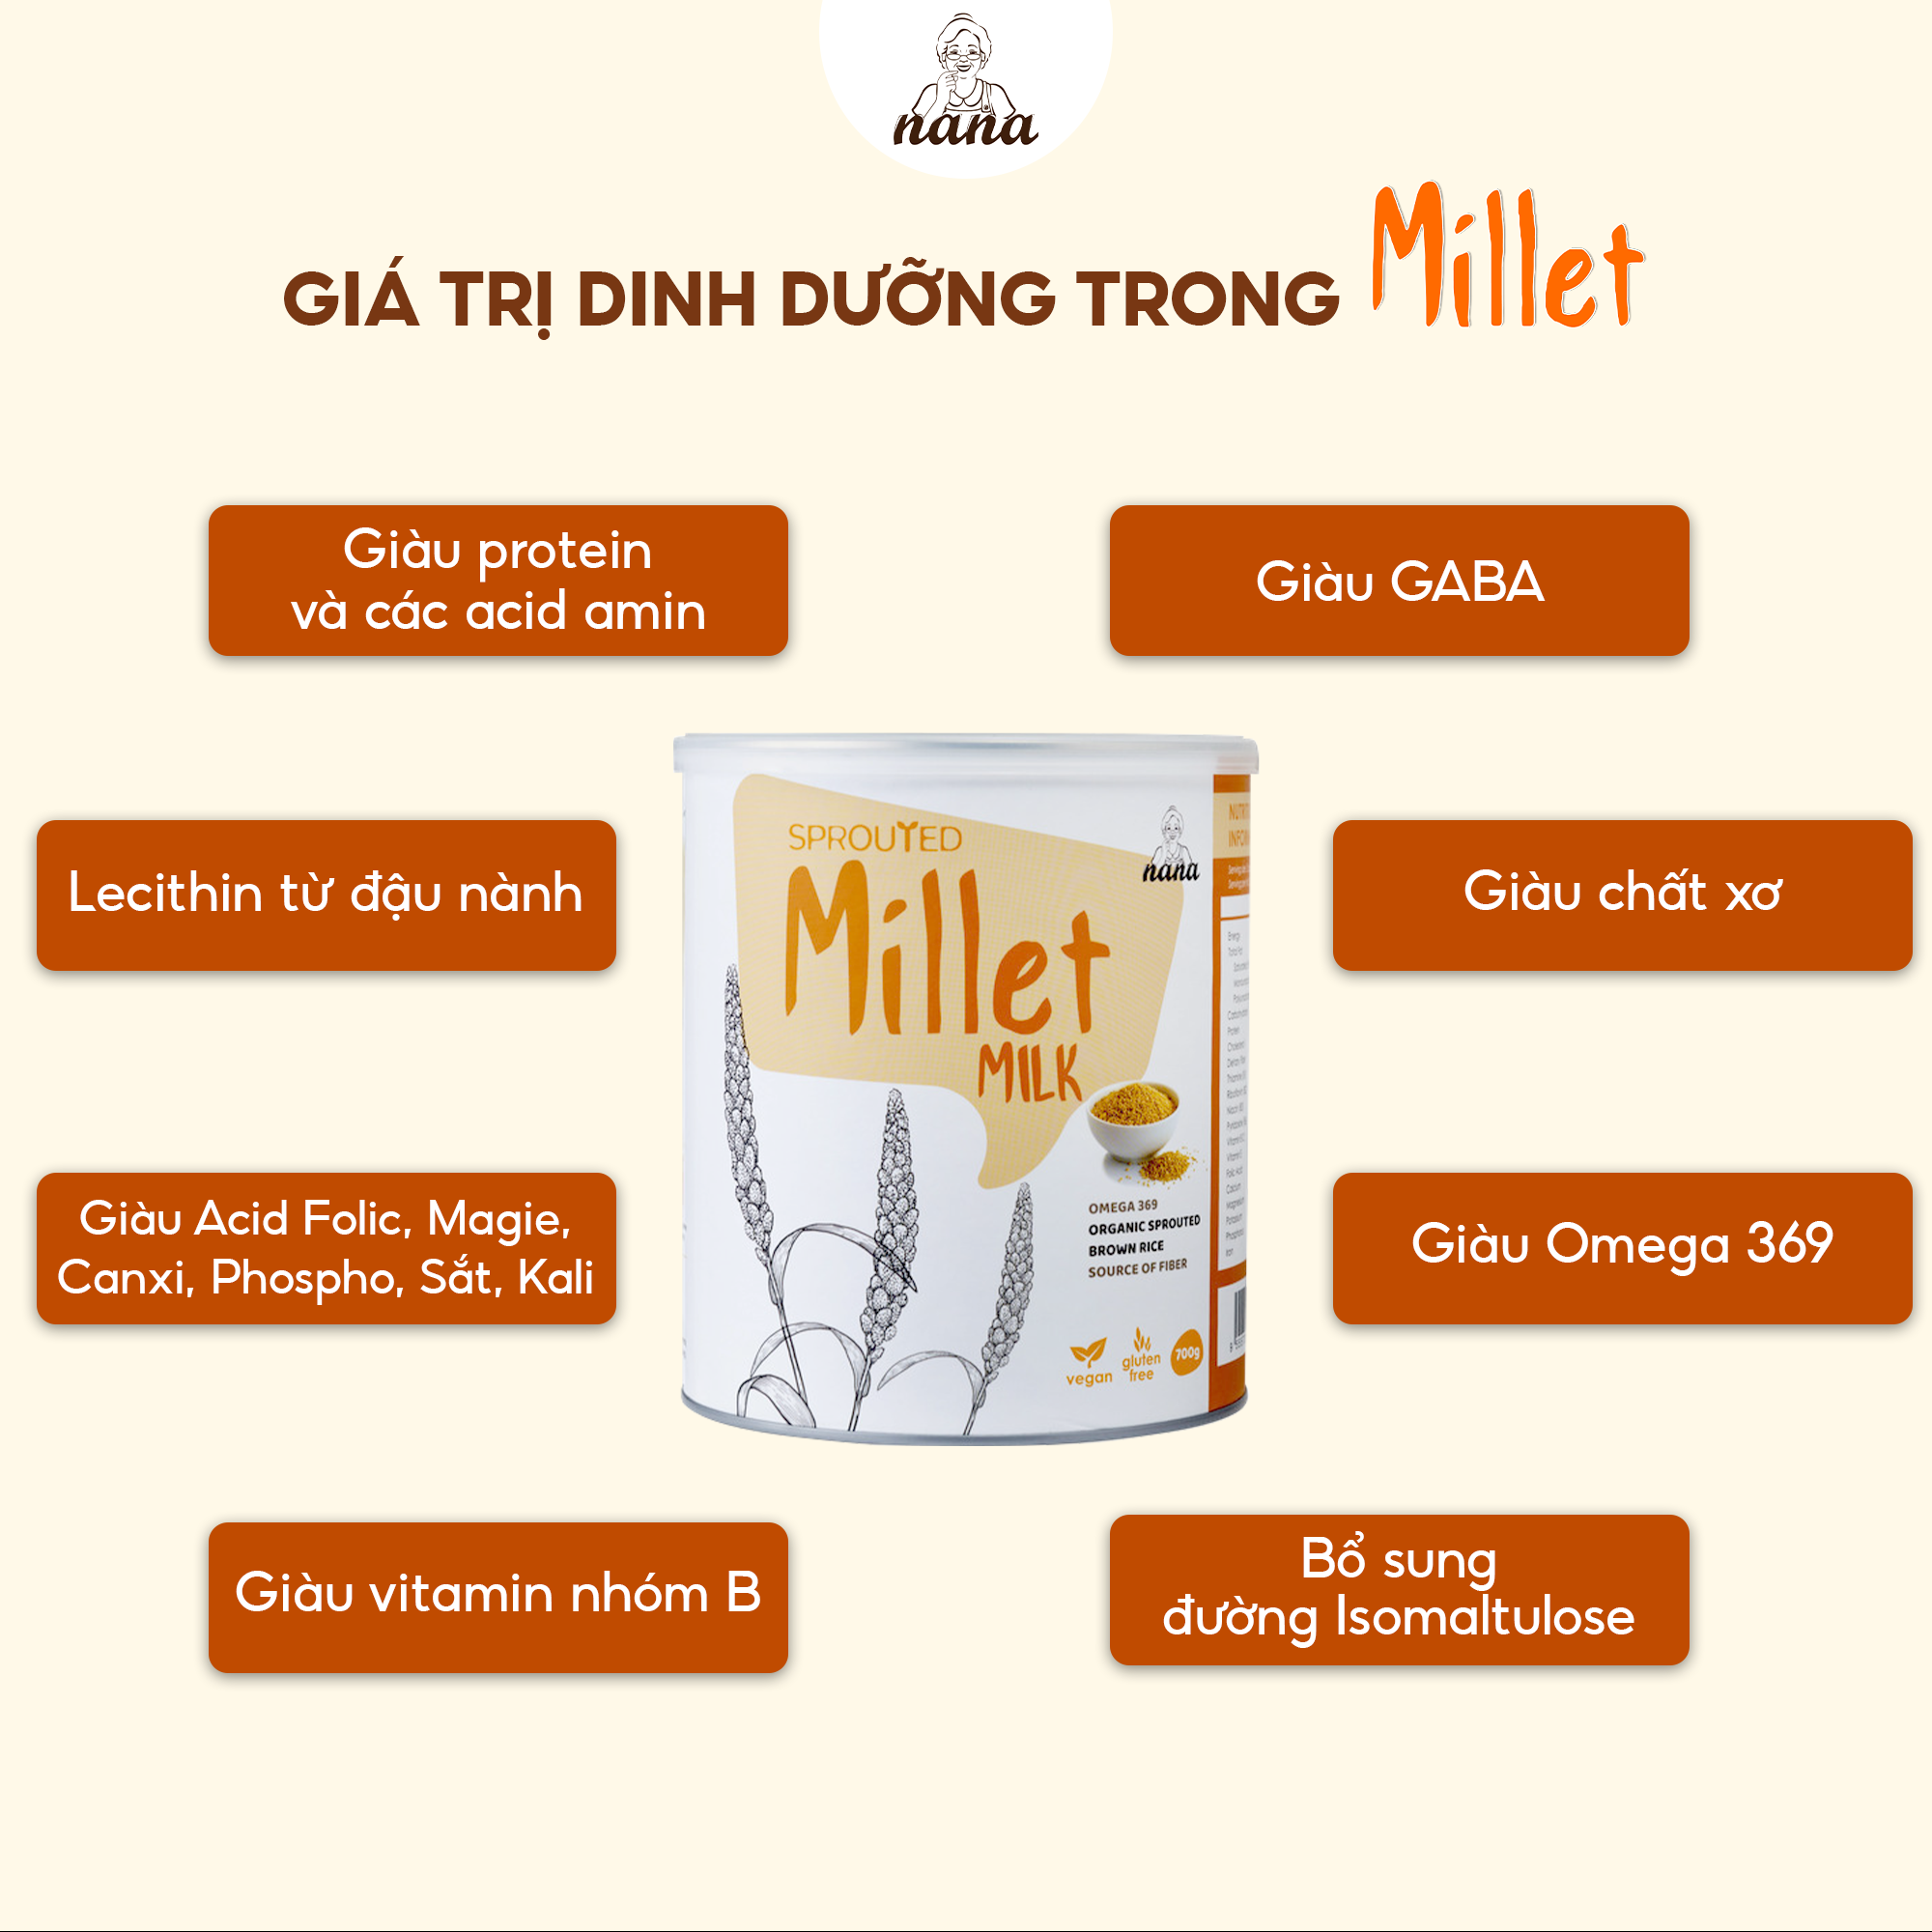 Sữa Hạt Gạo Lứt Hữu Cơ Millet Hộp 700g Vị Kê Nhập Khẩu Malaysia Cho Trẻ Từ 3 Tuổi &amp; Cả Gia Đình Bổ Sung Dinh Dưỡng Vegan - 24grains